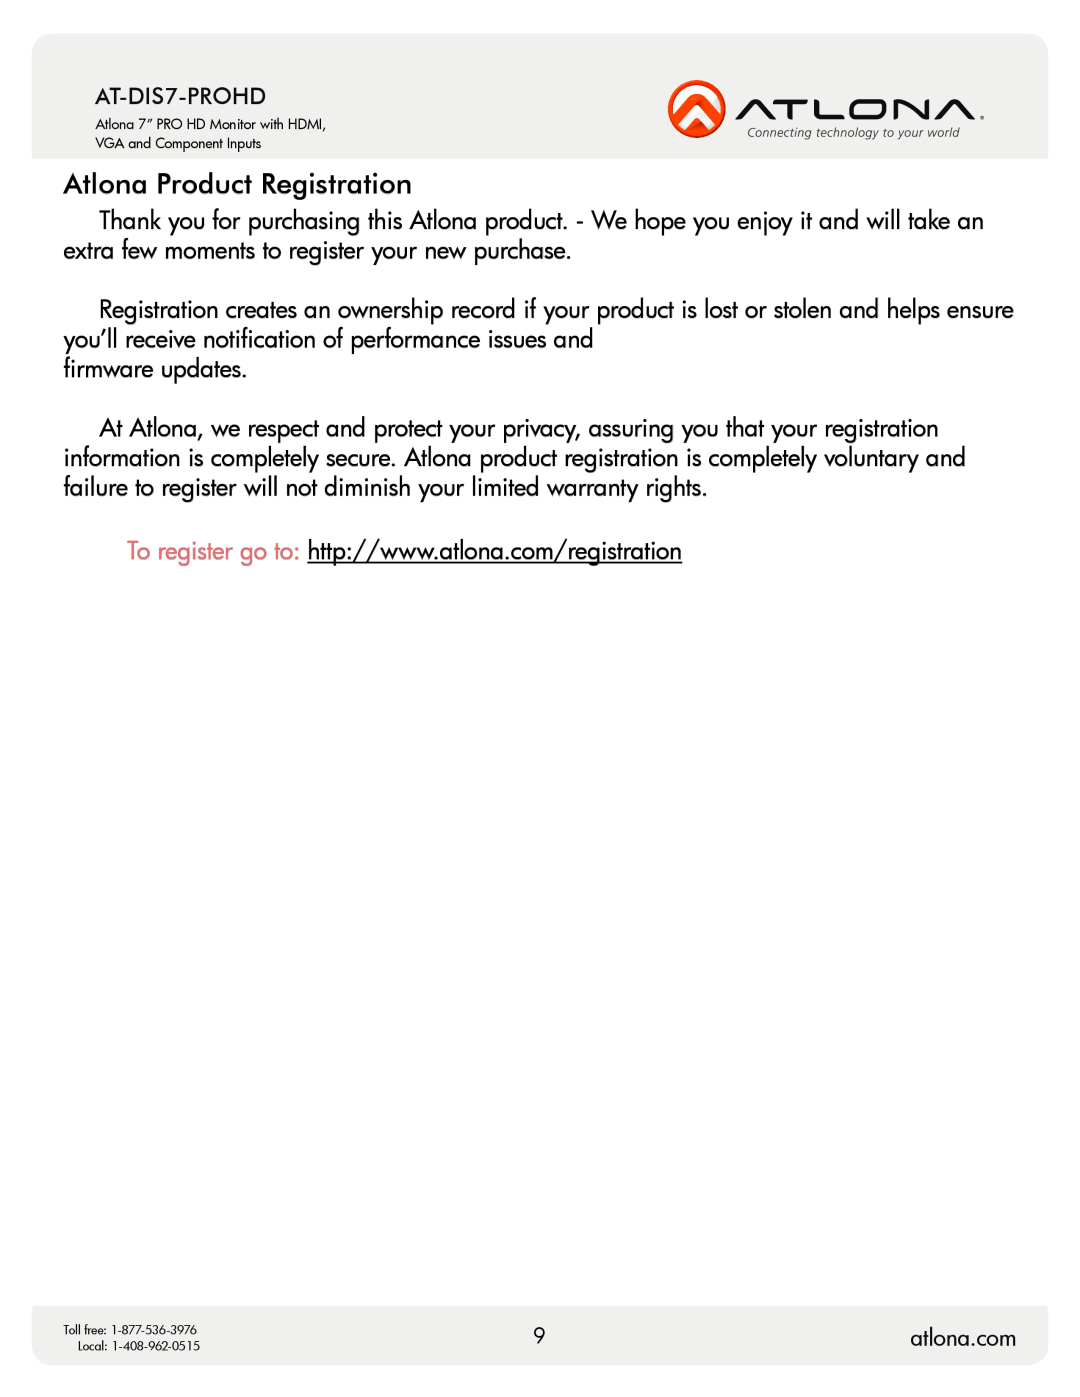 Atlona AT-DIS7-PROHD user manual Atlona Product Registration 